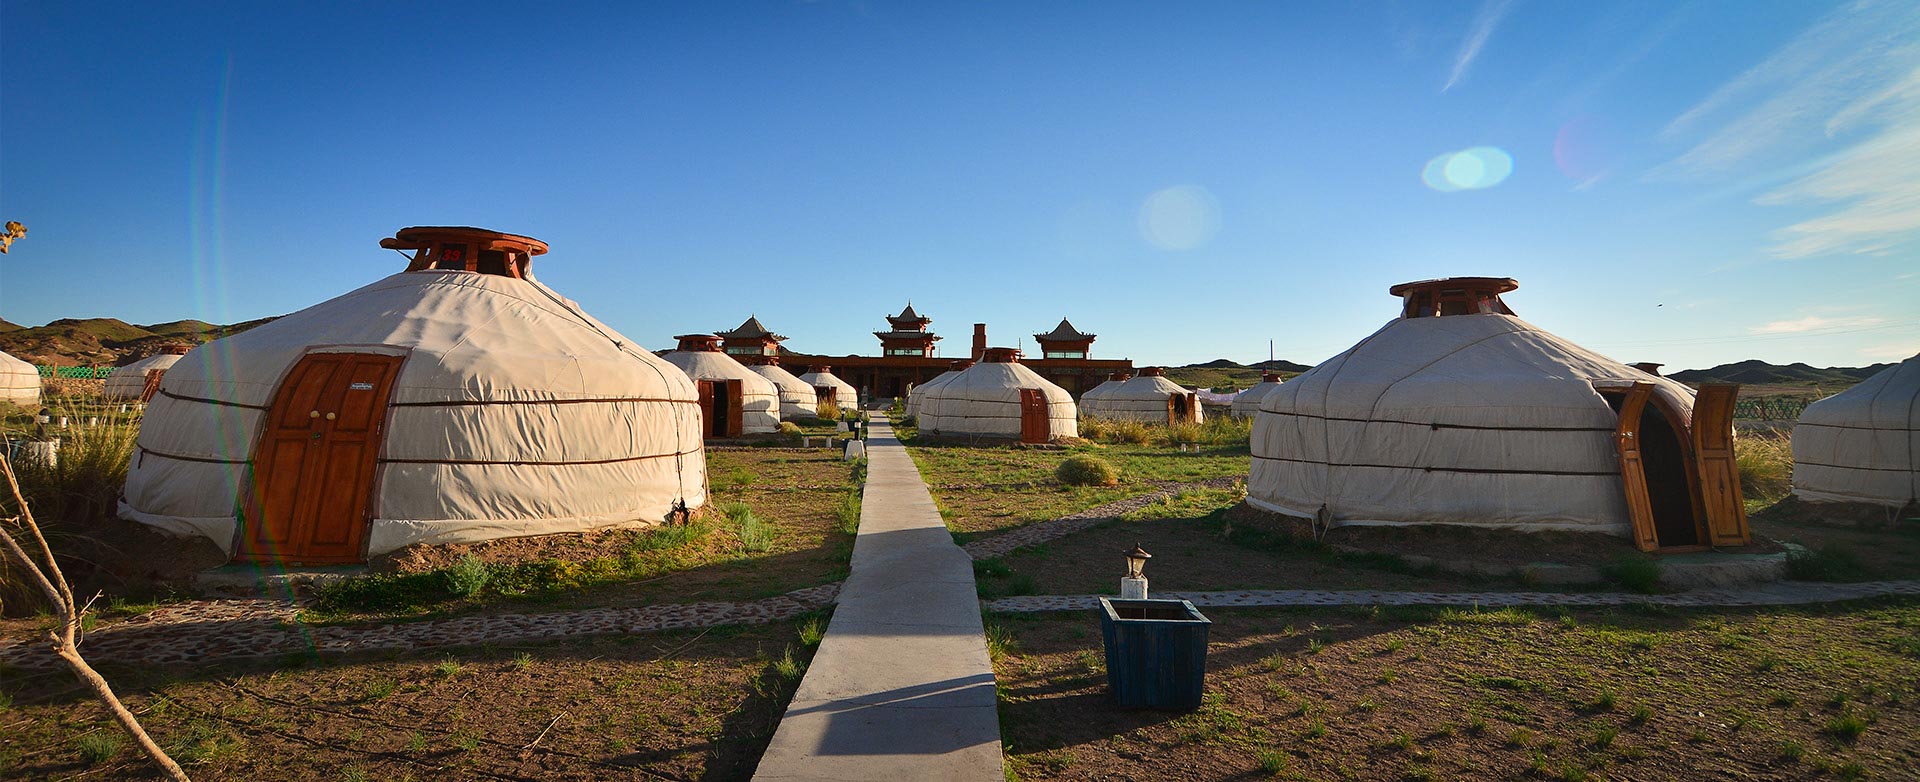 Монголия национальное жилище